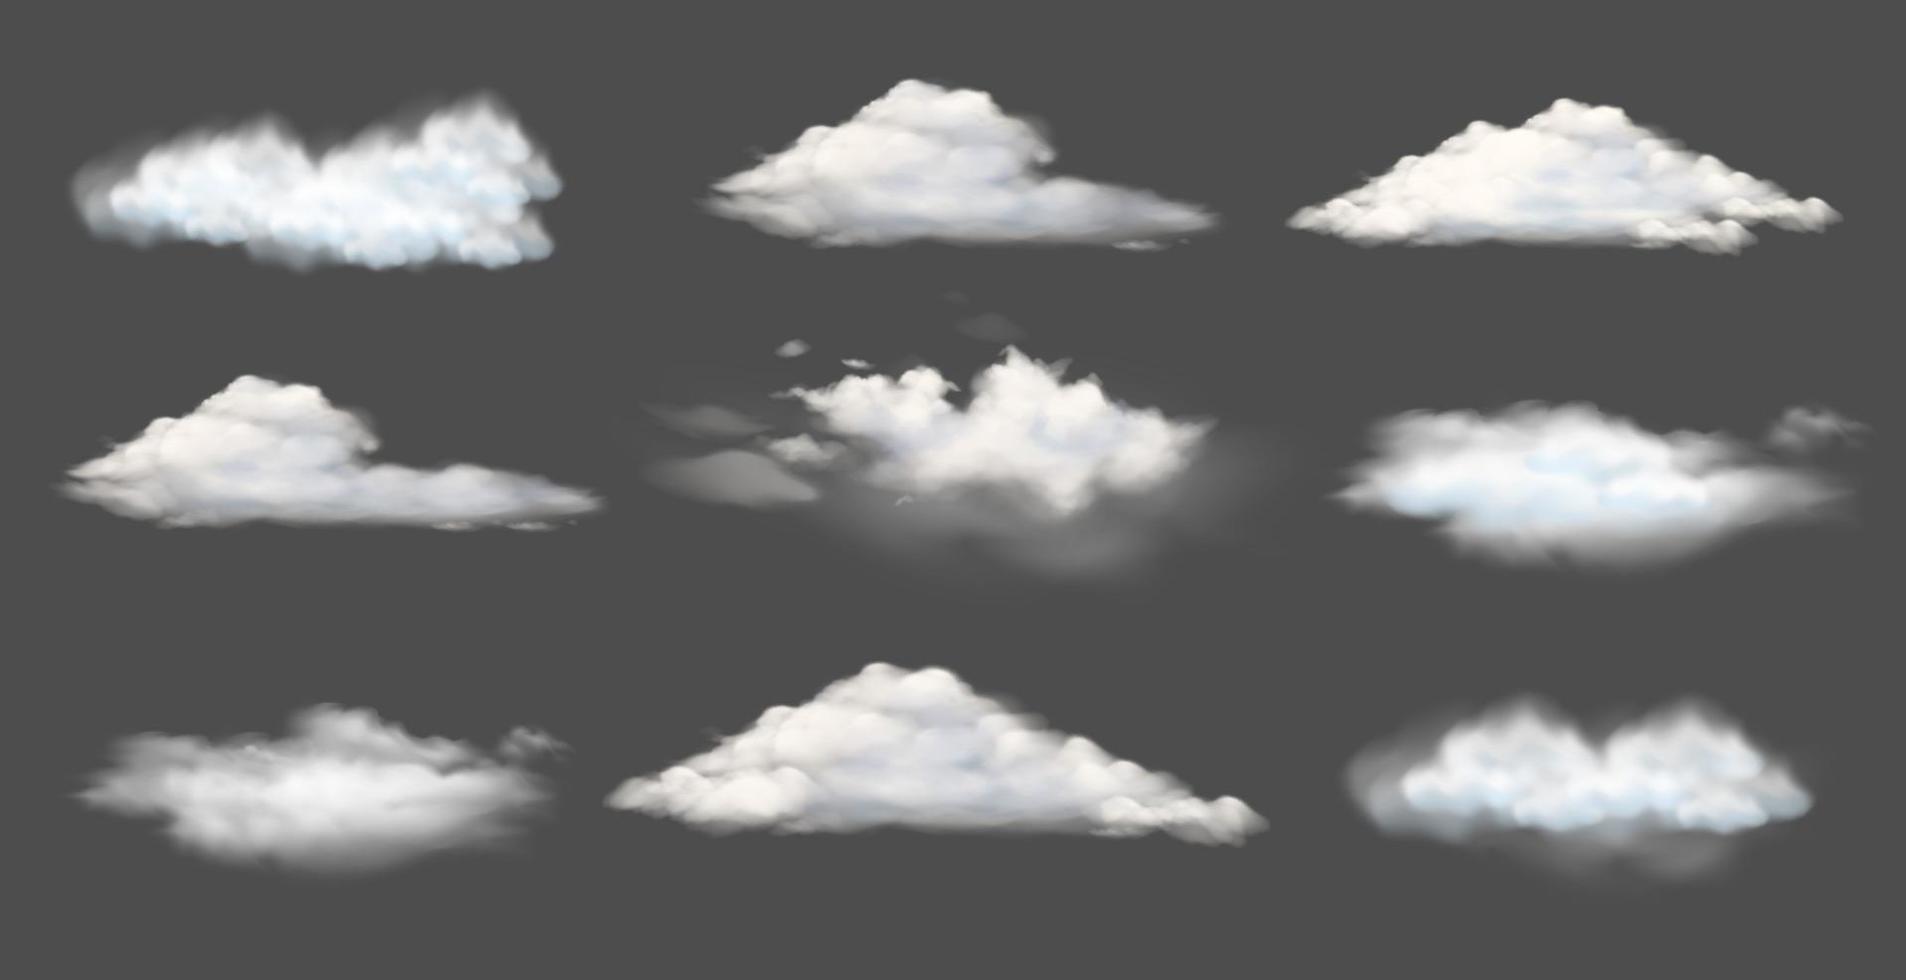 verzameling van witte wolken of mist van verschillende vormen, vectorillustratie van natuurlijke landschapsontwerpelementen vector